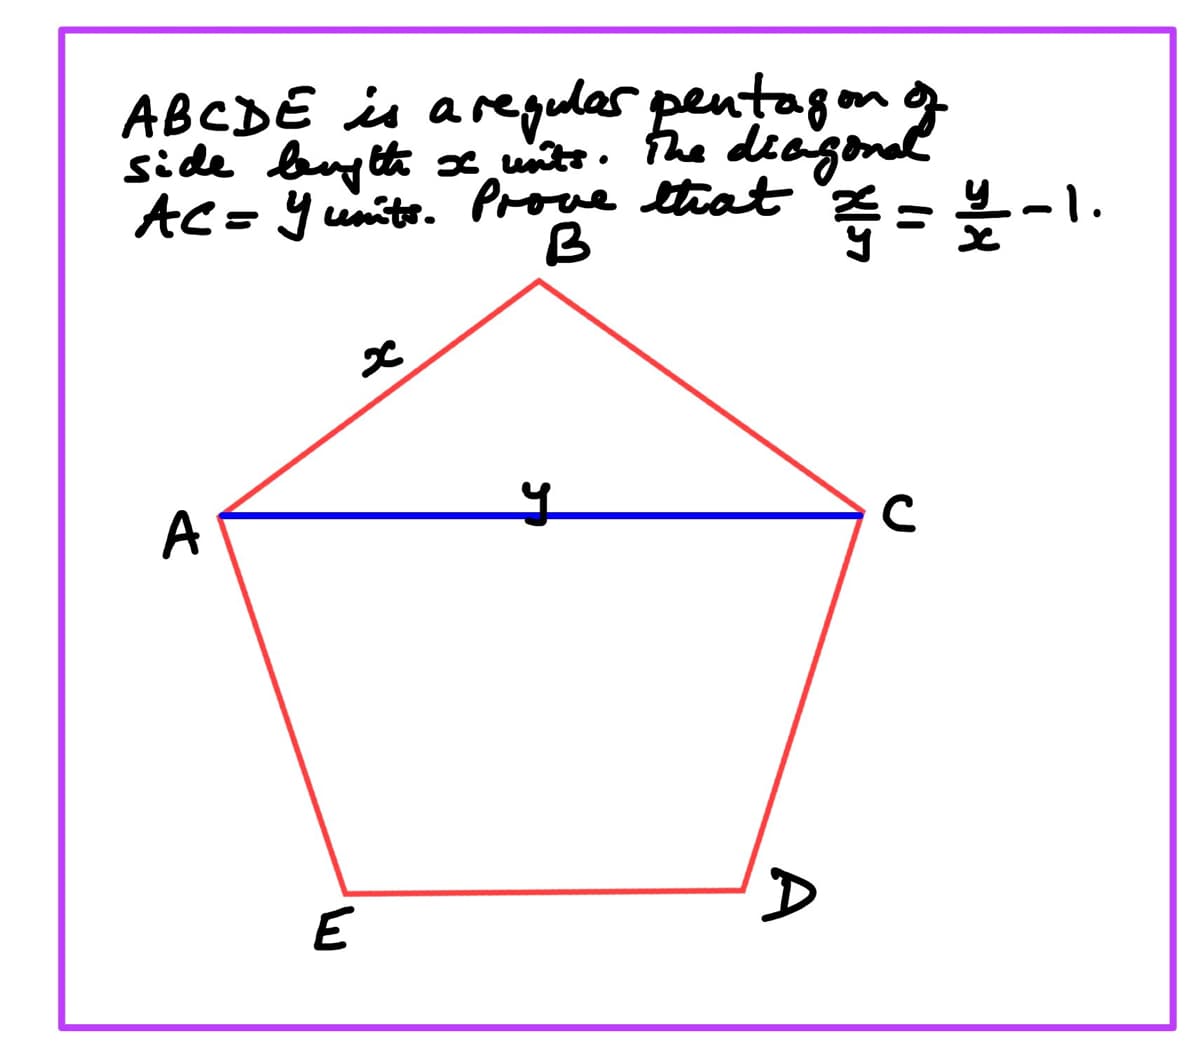 A B C D E is a regulas pentagon of
side length x units. The diagonal
AC=Yunits. Prove that == /2-1.
A
E
y
A
с